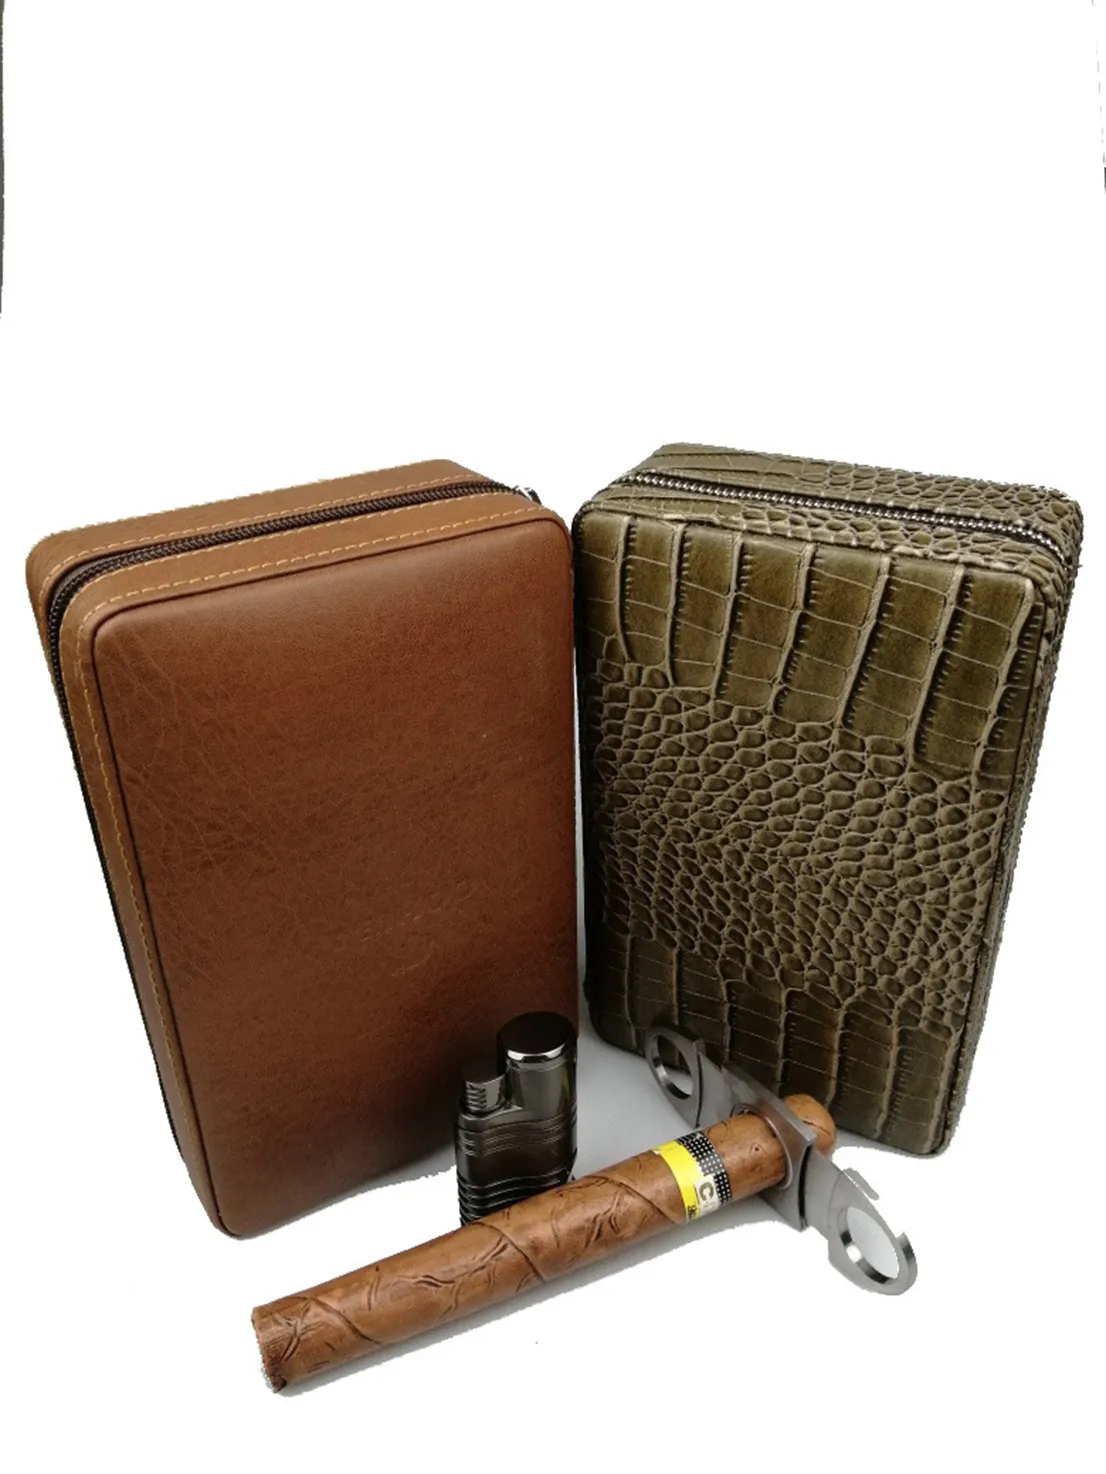 étui à cigares cubain Spot personnalisé livré ciseaux à cigares portable cave à cigares Gohiba sac de voyage en peau de vache sac de rangement valise sacs, bagages accessoires crocodile boîte 1